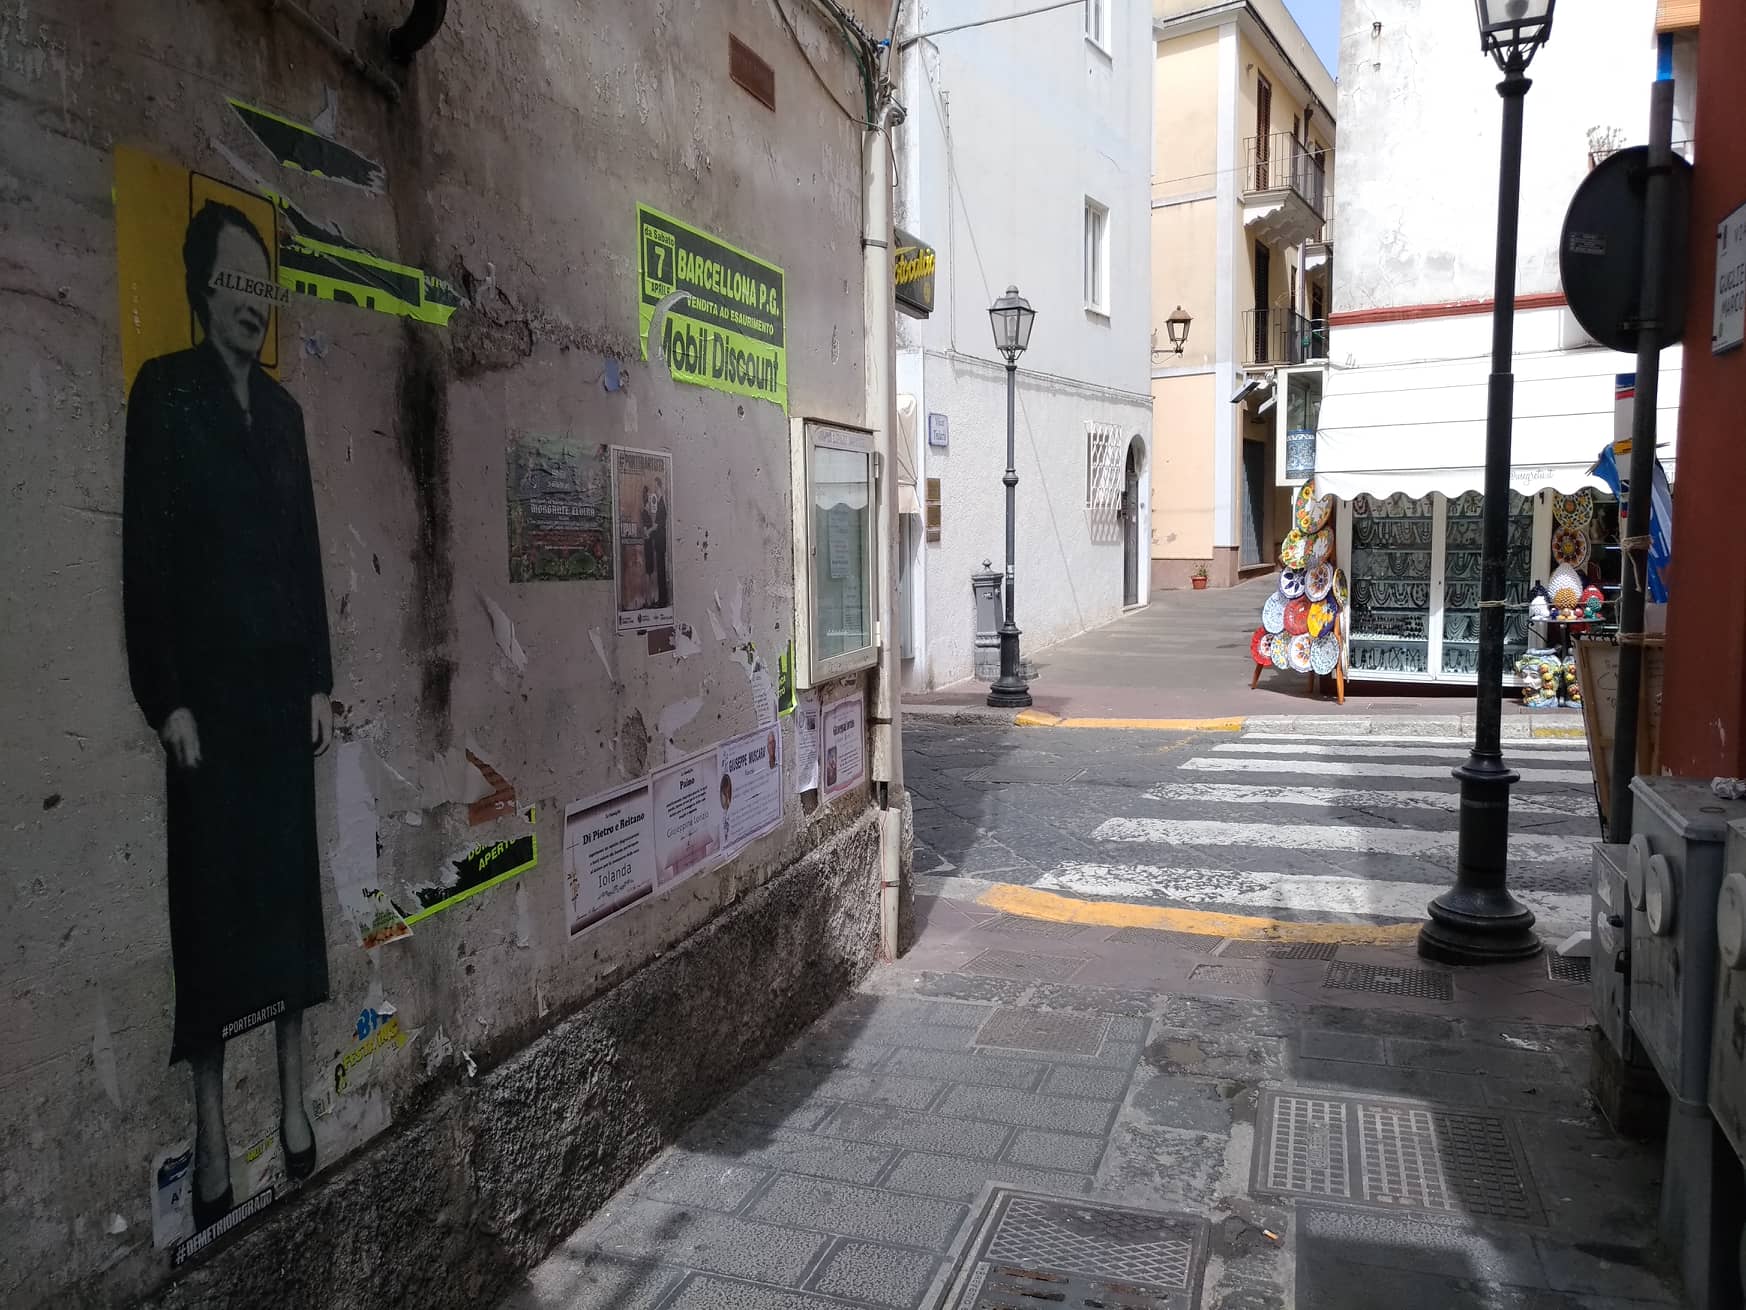 porte d'artista di Demetrio Di Grado, un progetto di urban art tra le strade di lipari - messina